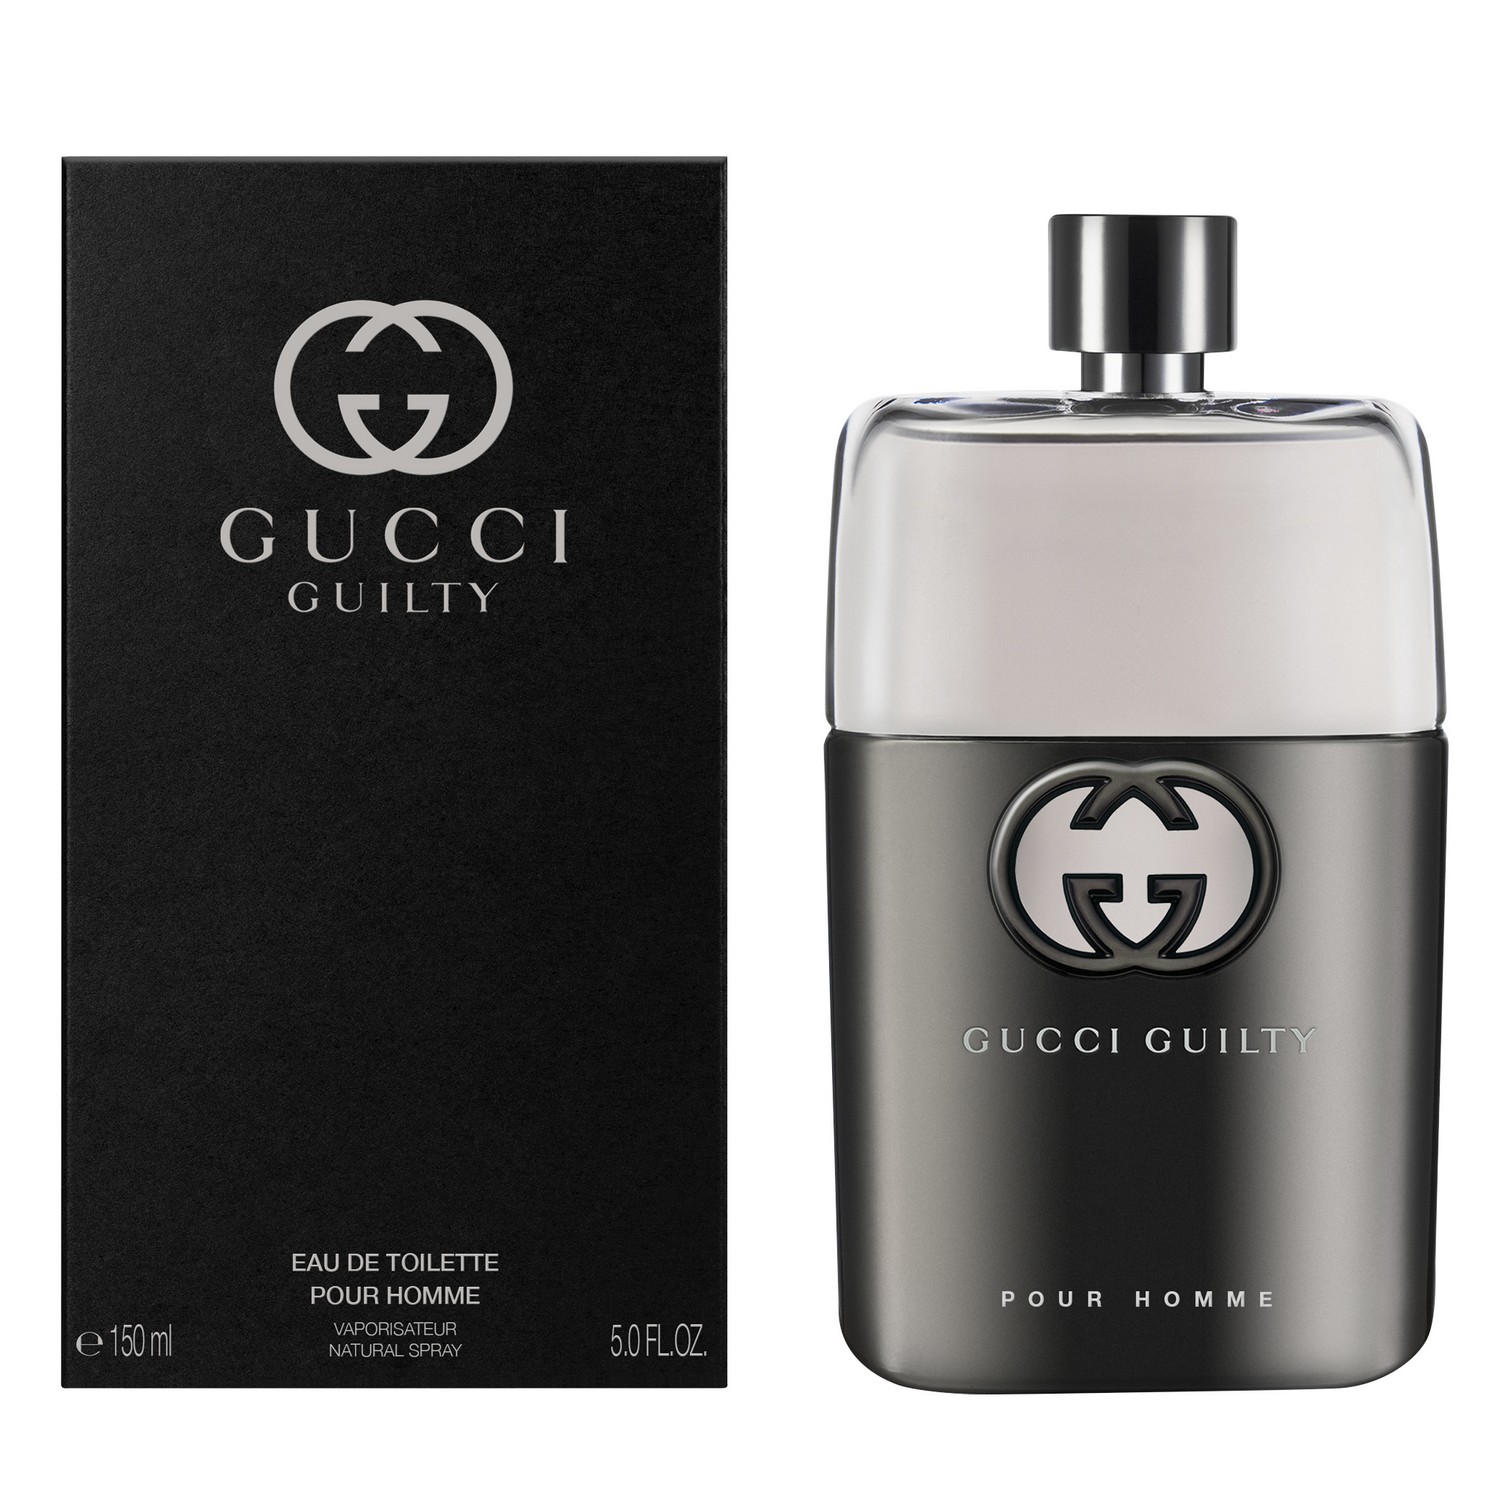 Gucci Guilty Pour Homme Eau de Toilette 150ml